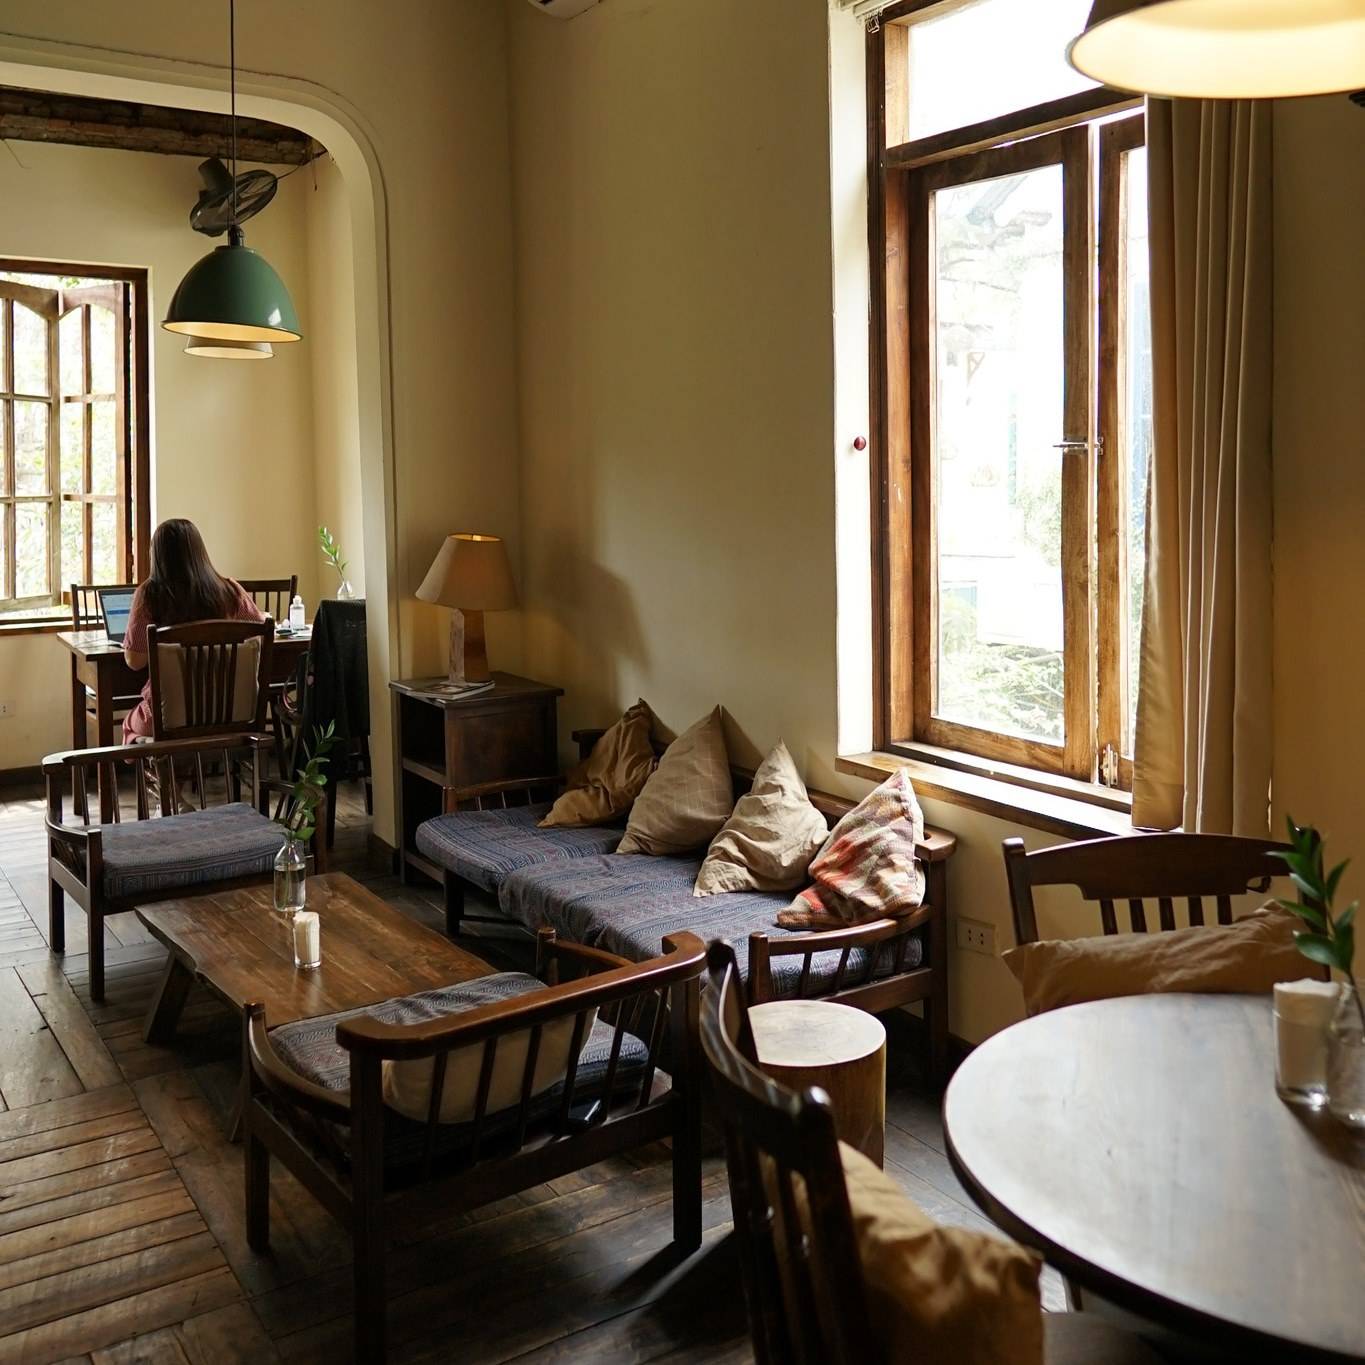 Xofa Café & Bistro là một địa điểm chụp ảnh đẹp ở Hà Nội nhờ việc tận dụng những bộ sofa và hàng trăm cây kiểng xanh tươi để trang trí không gian trong - ngoài quán